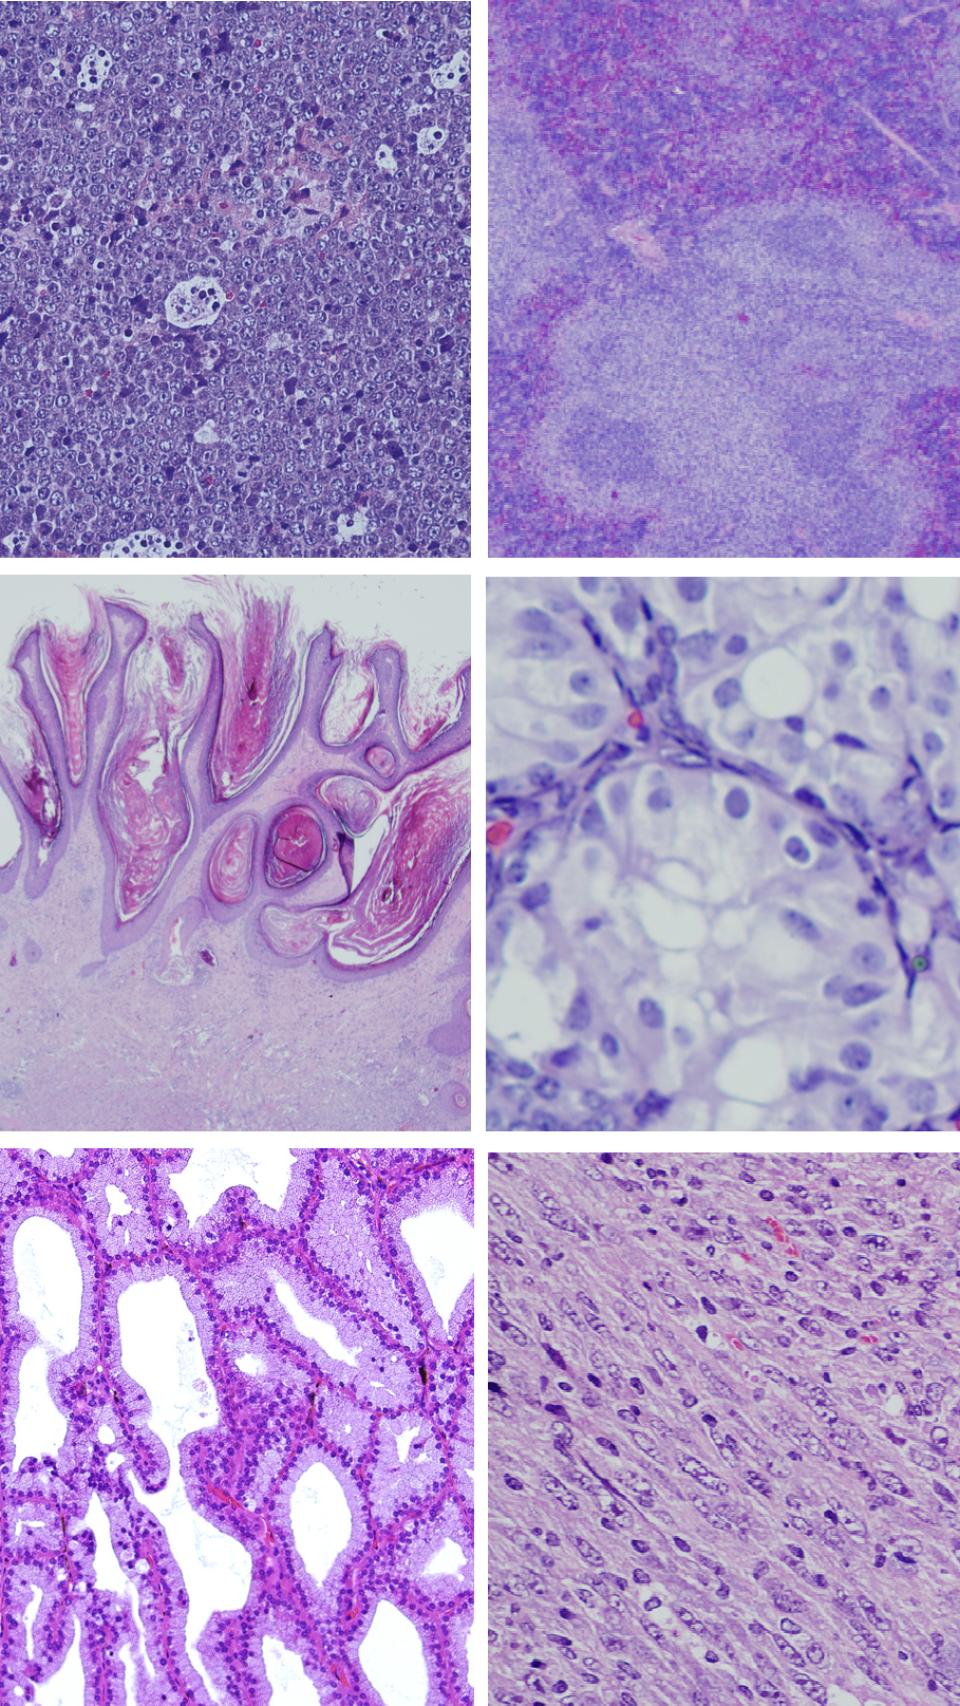 Ejemplos de los tumores inducidos tras la expresión de la versión mutante de RRAS2